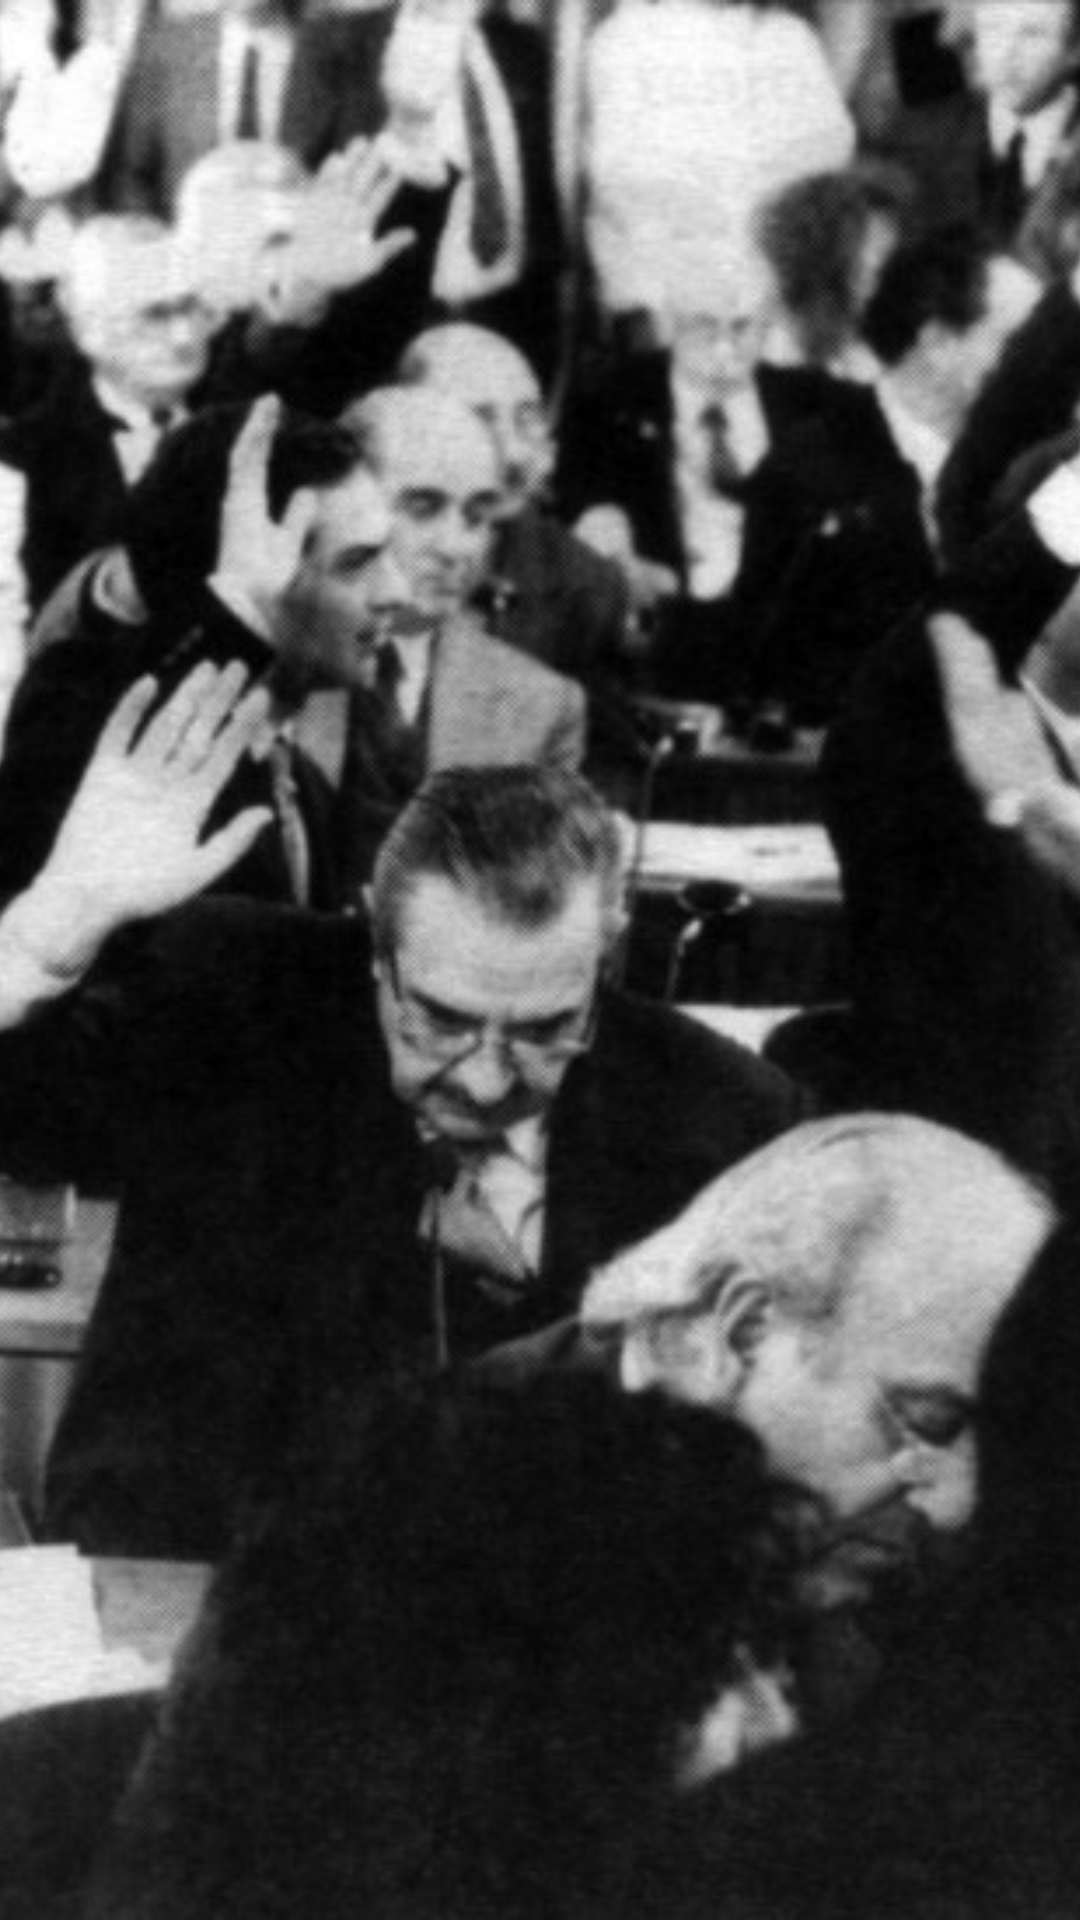 Los constituyentes de 1994, en el recinto, votando. Se lo ve a Raúl Alfonsín levantando la mano.